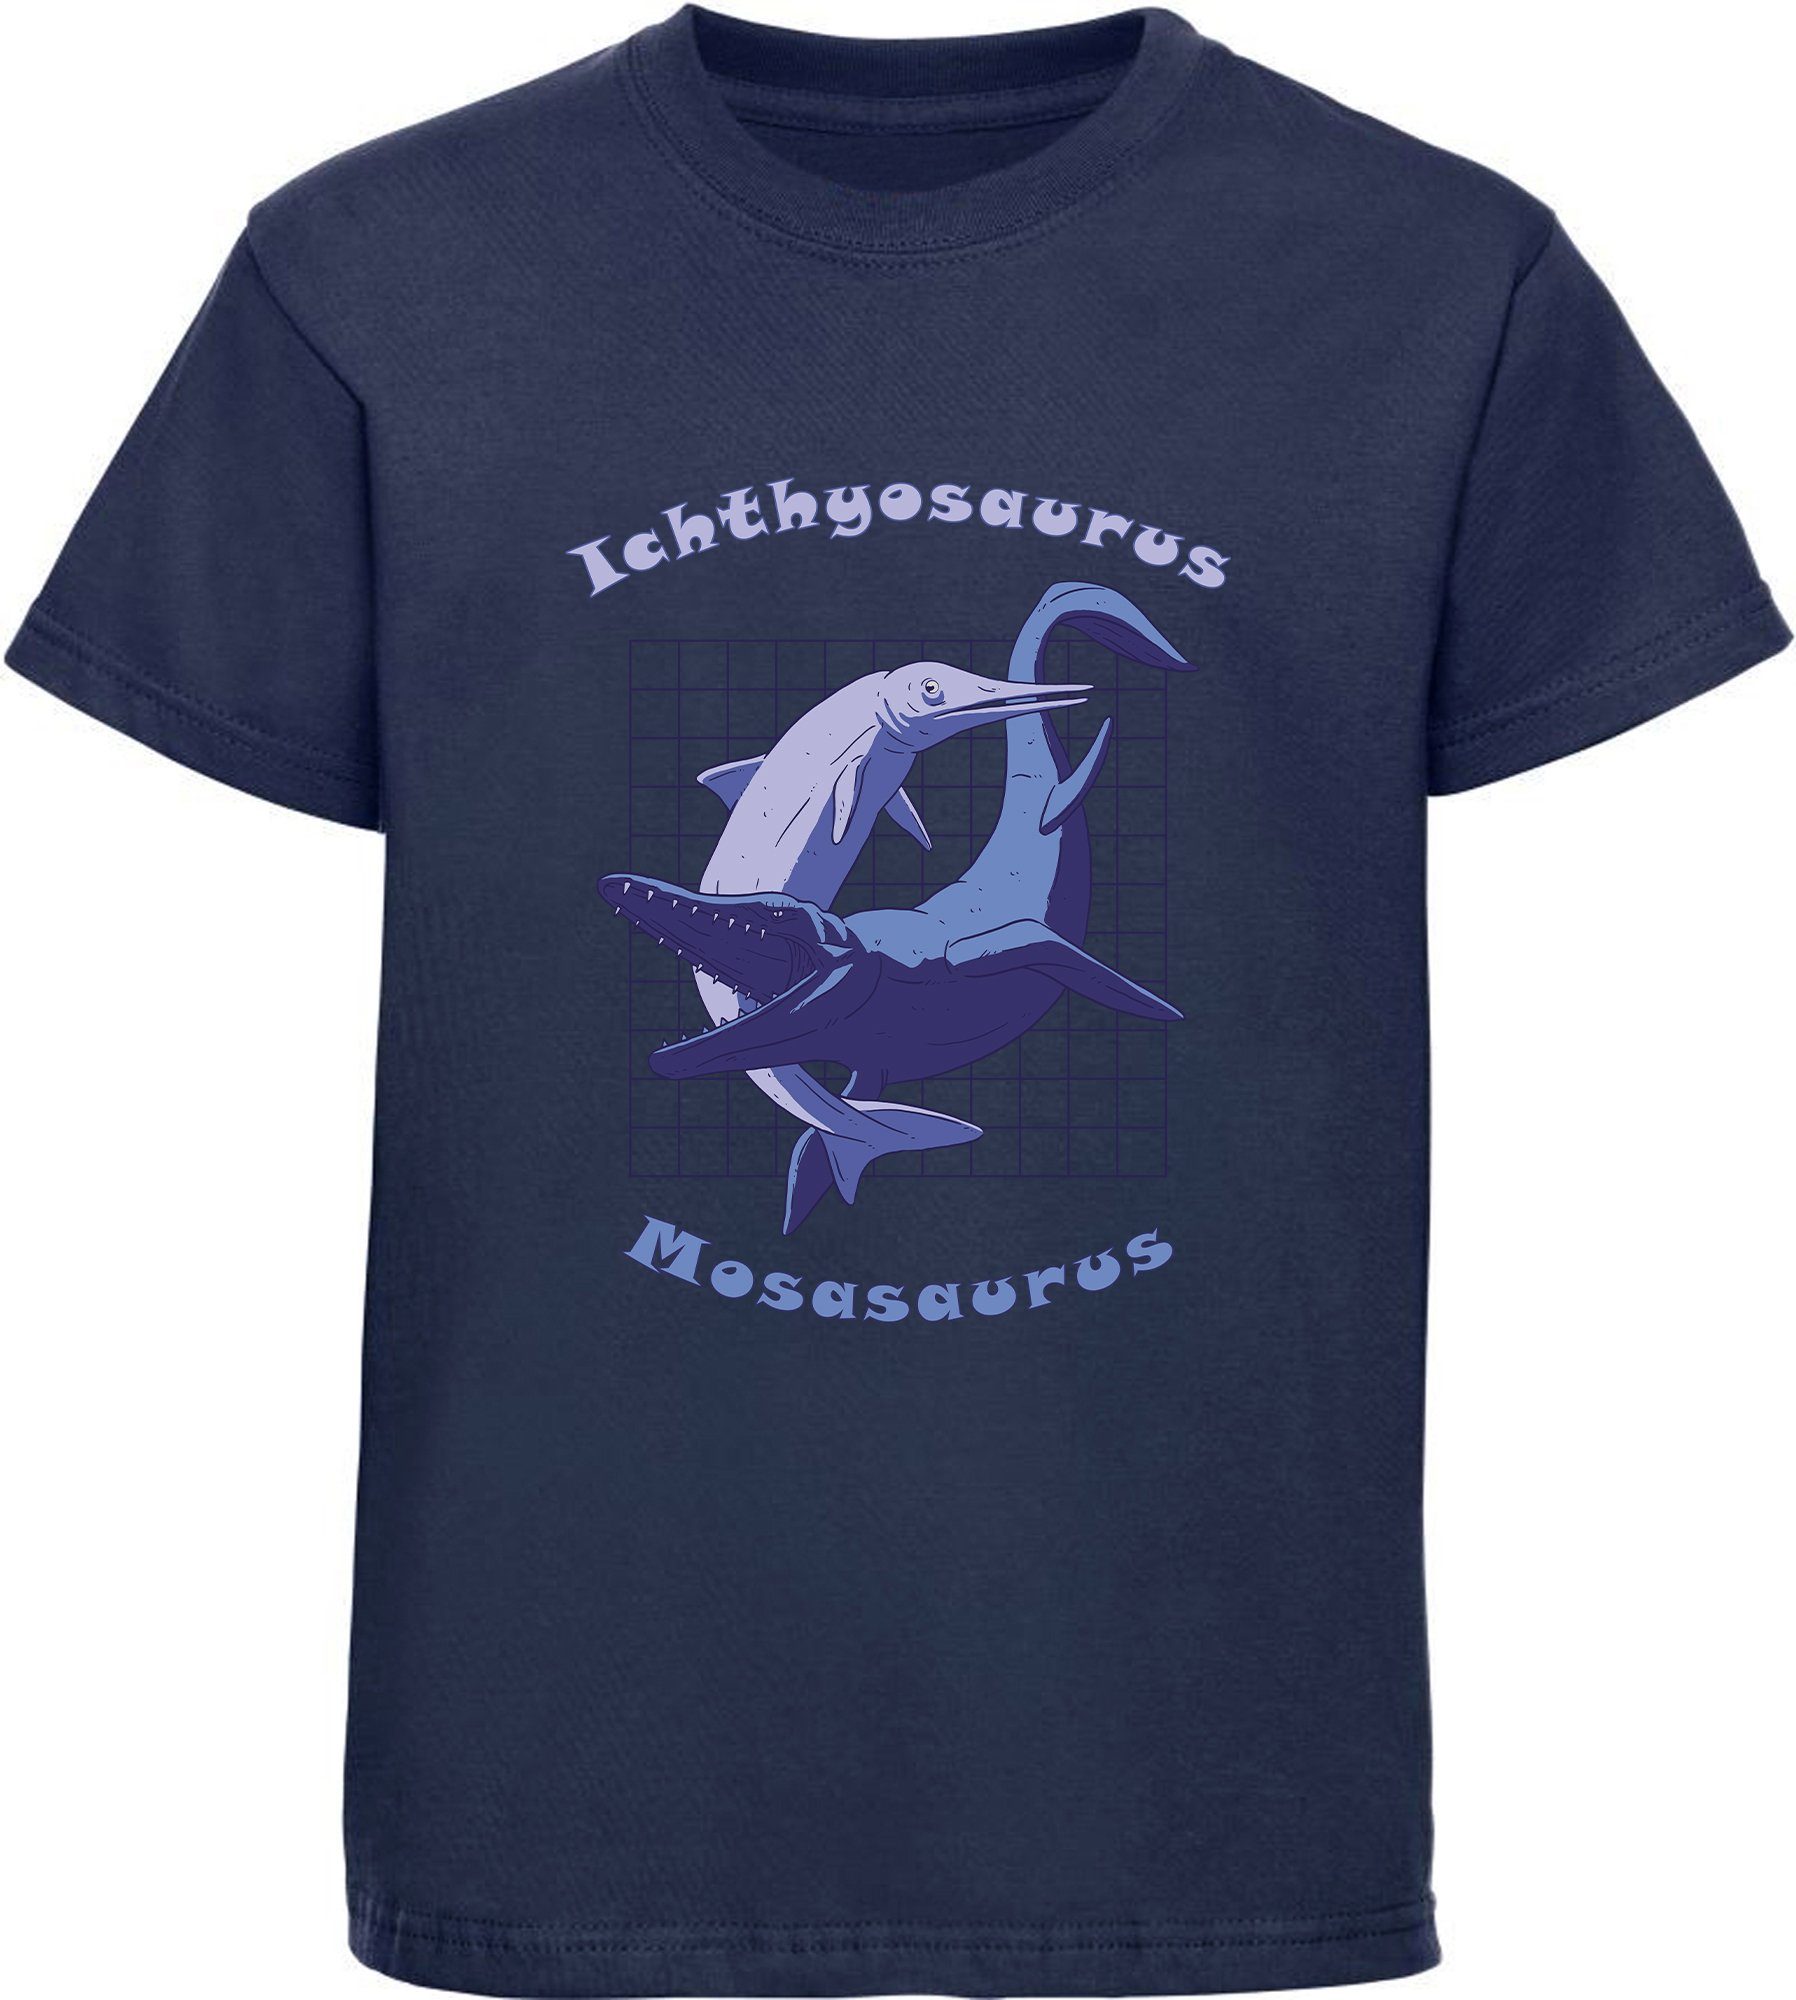 MyDesign24 Print-Shirt bedrucktes Kinder T-Shirt mit Ichthyosaurus und Mosasaurus Baumwollshirt mit Dino, schwarz, weiß, rot, blau, i89 navy blau